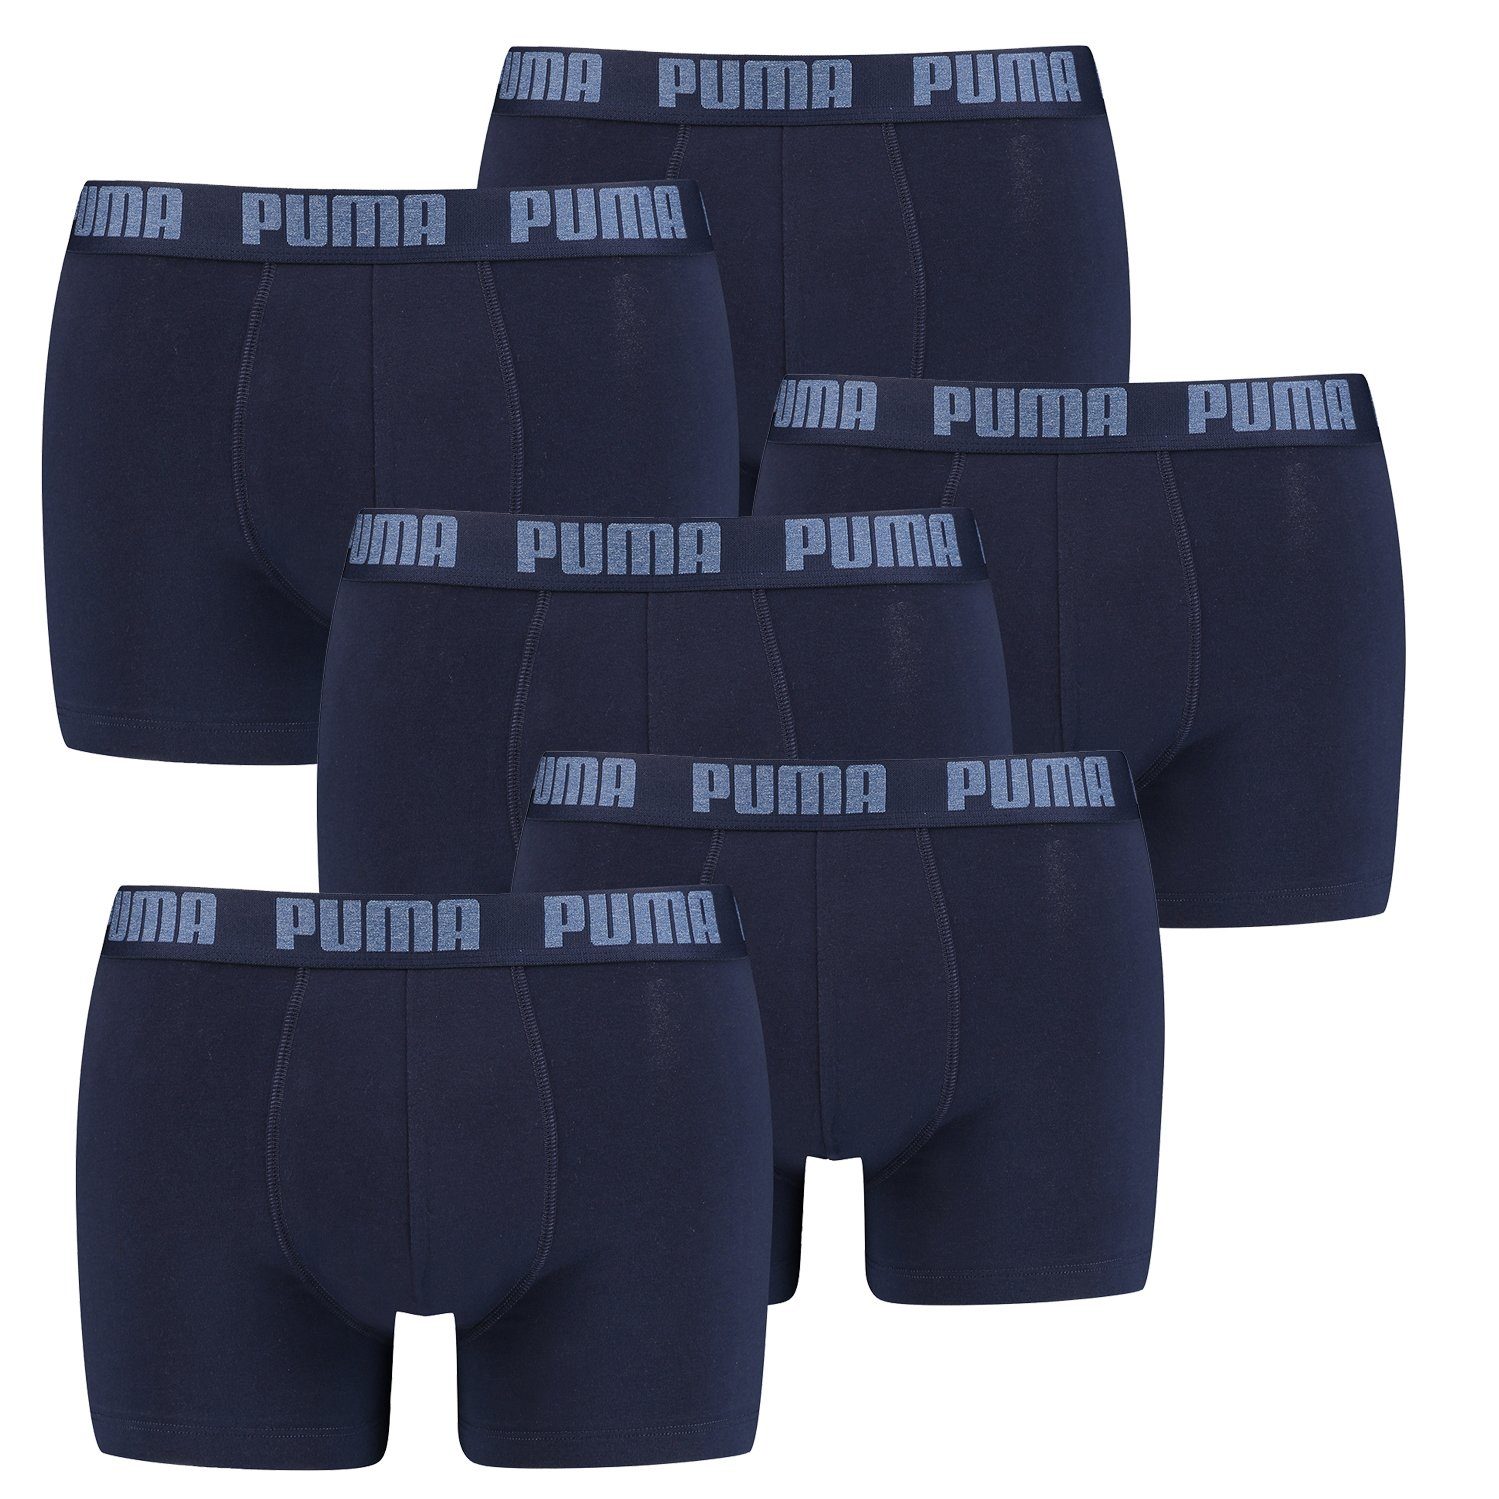 PUMA Boxershorts PUMA BASIC BOXER 6P